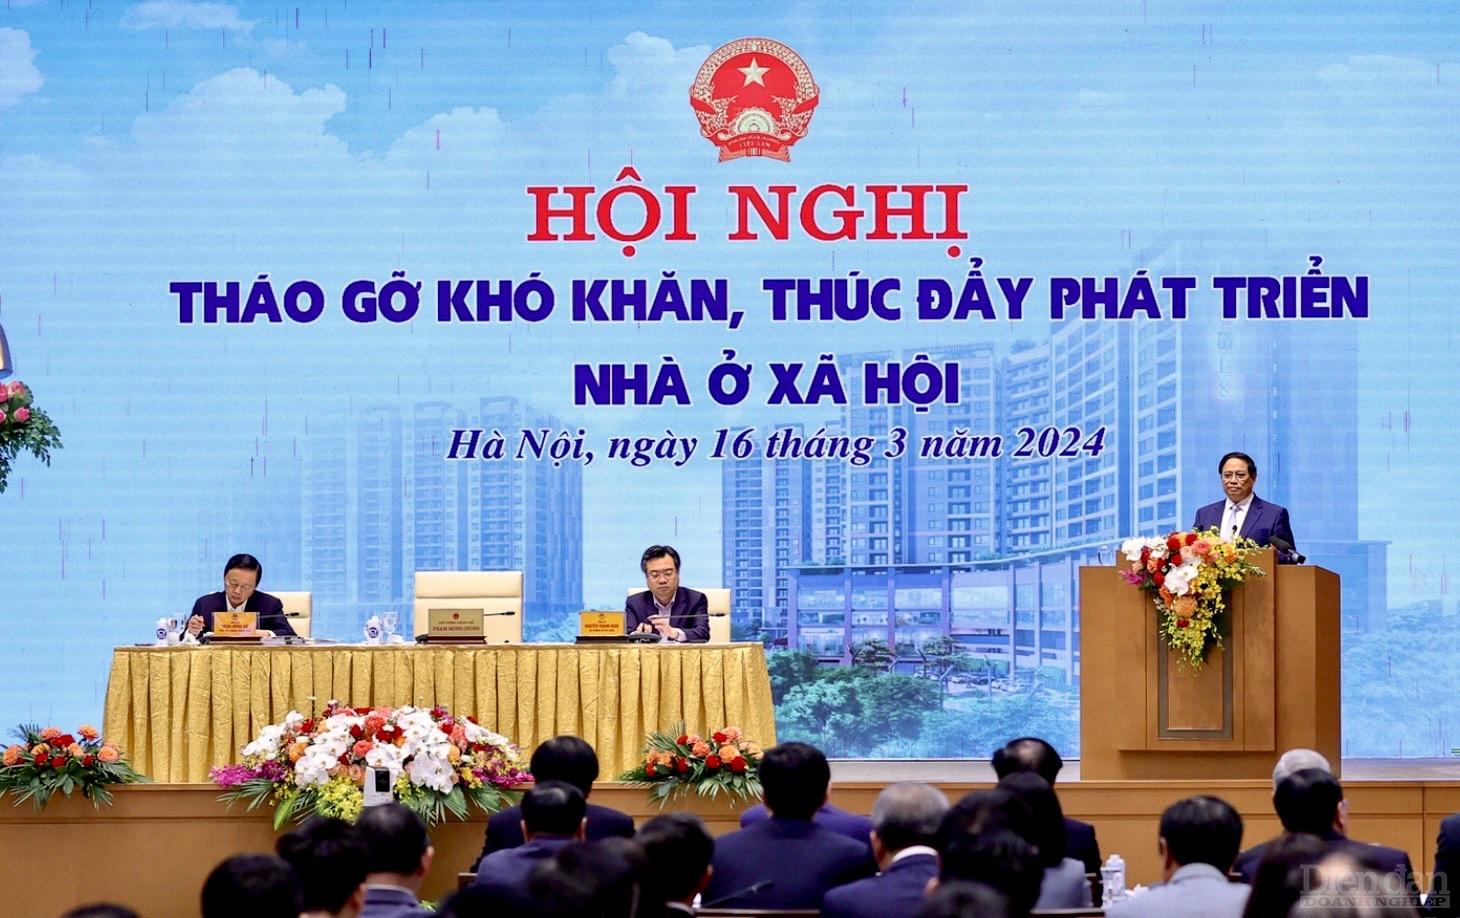 Dù ghi nhận những kết quả bước đầu góp phần phát triển nhà ở xã hội, song theo Thủ tướng Phạm Minh Chính, việc phát triển phân khúc này so với mục tiêu, yêu cầu, mong muốn thì chưa đạt được và còn một số tồn tại, khó khăn.